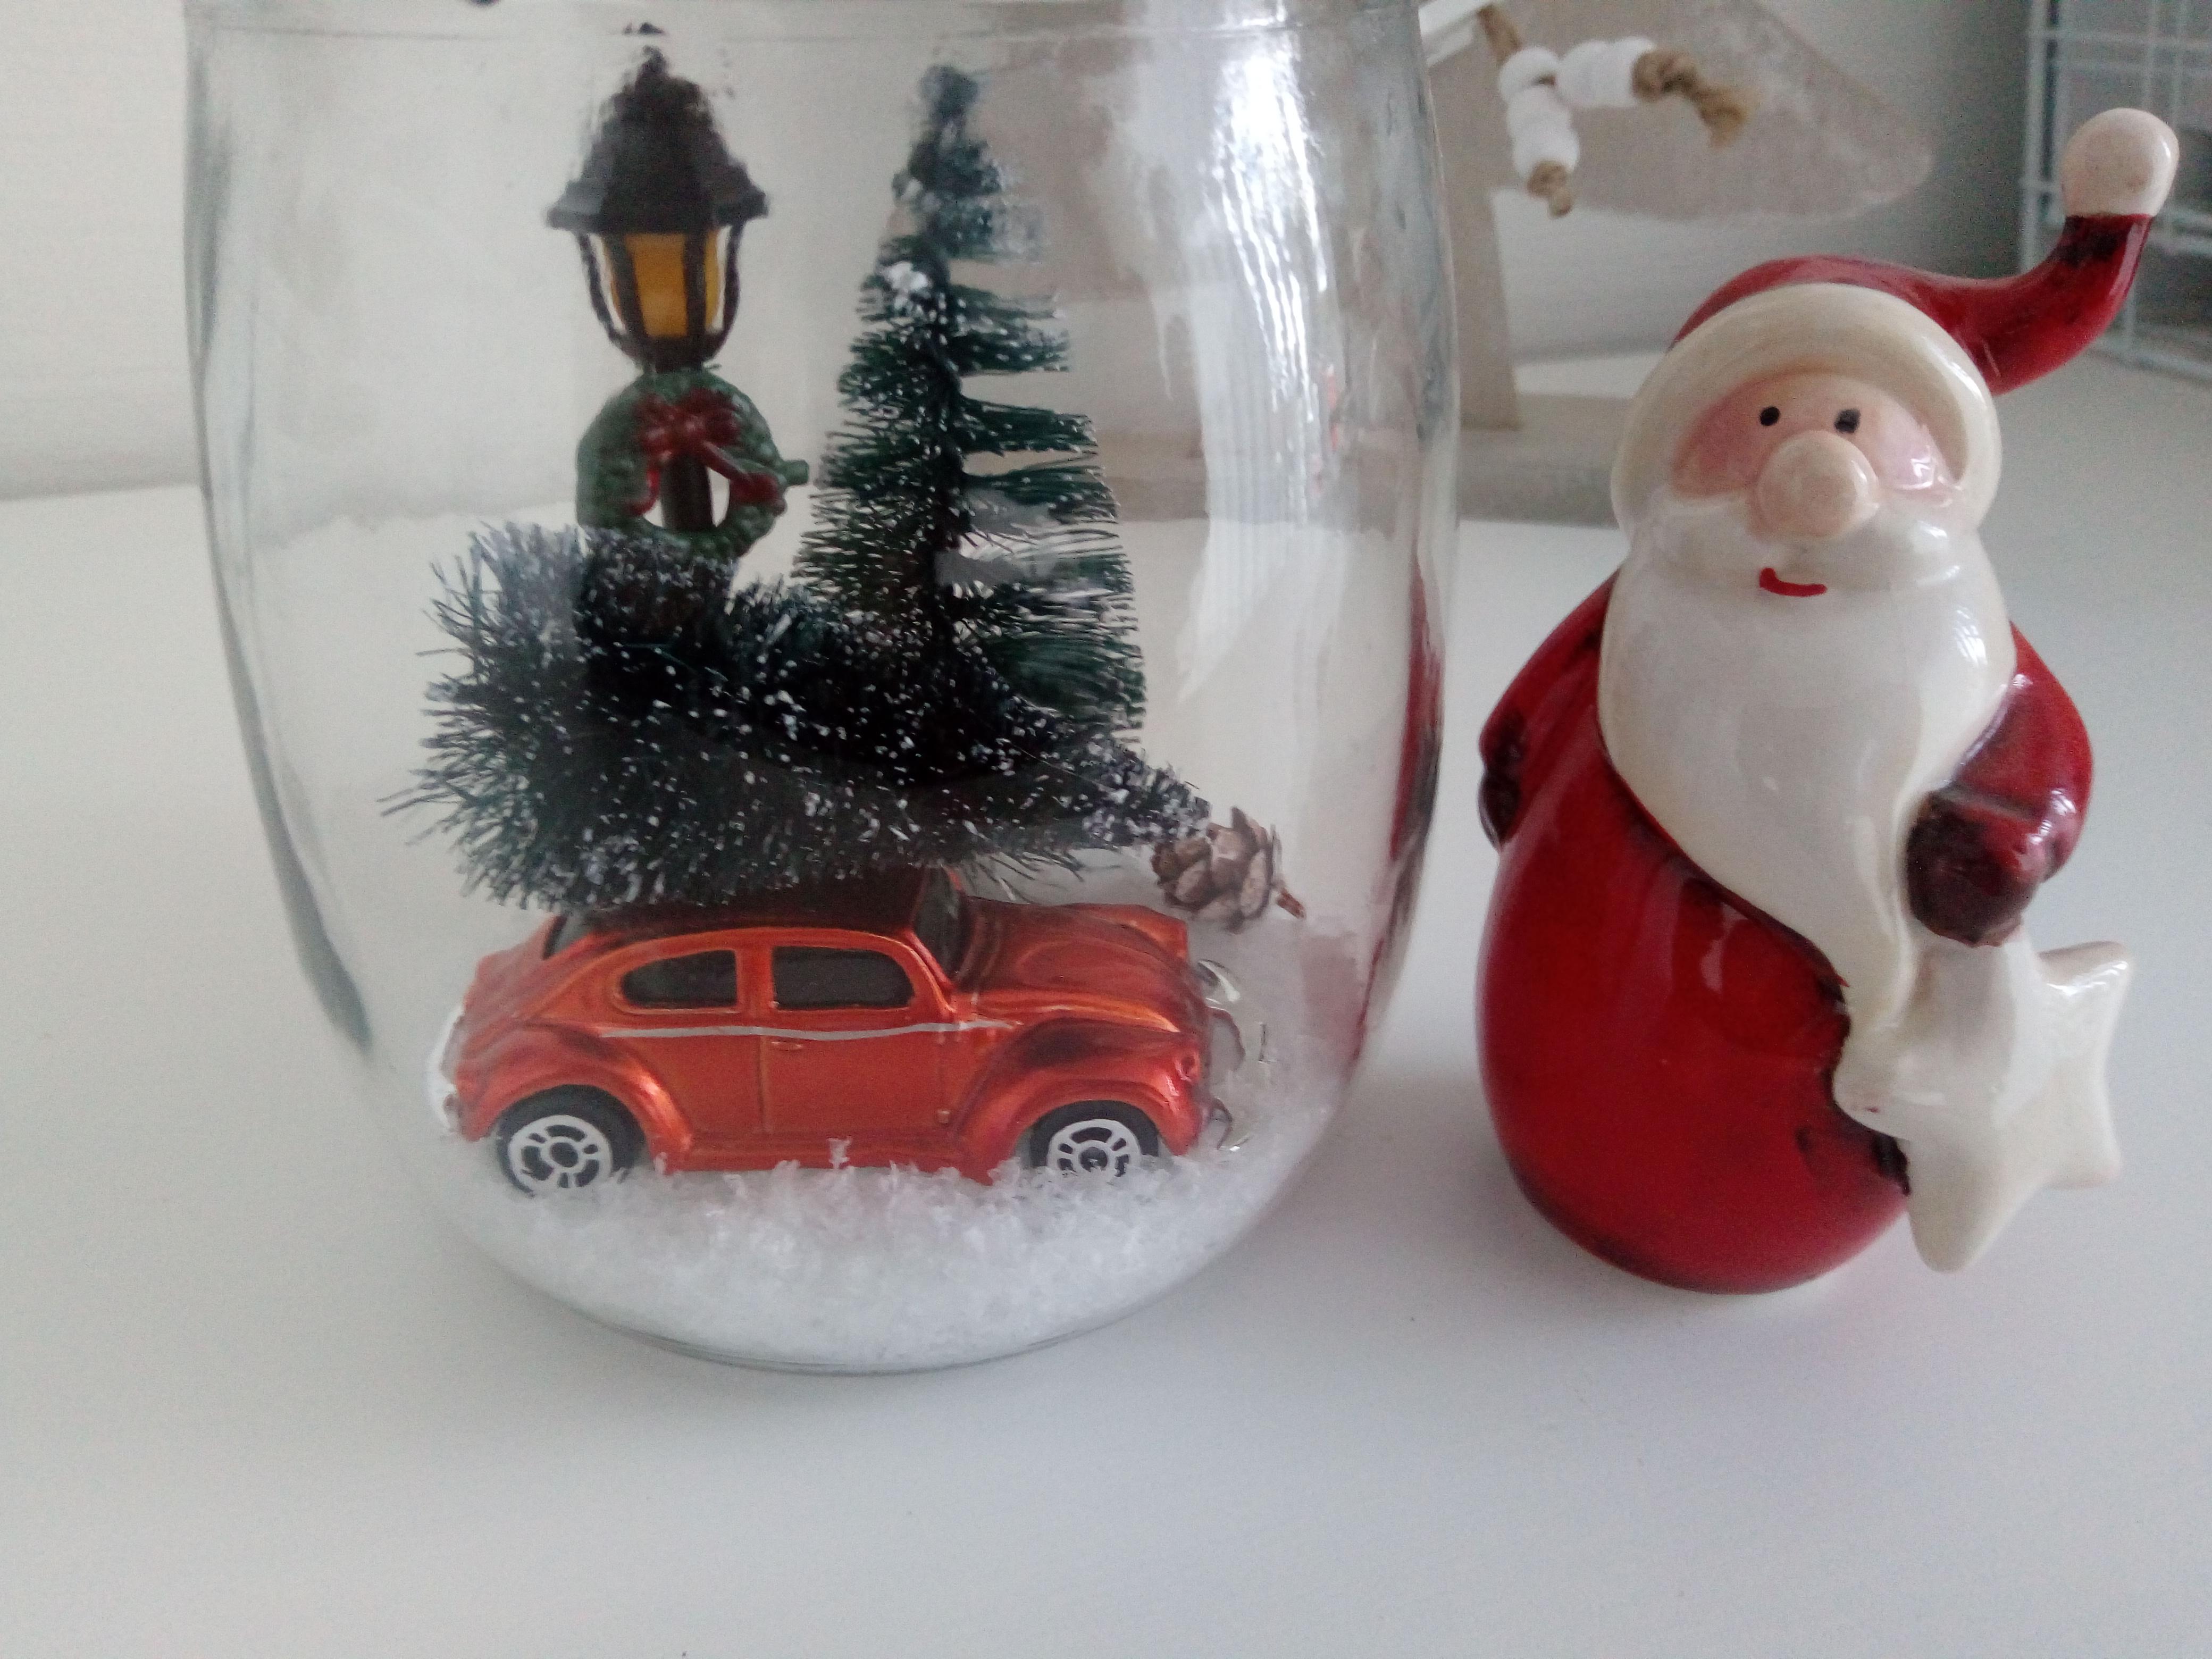 #diy #weckglas #weihnachten #xmas #nikolaus #carwithtree #weihnachtsbaum #letitsnow